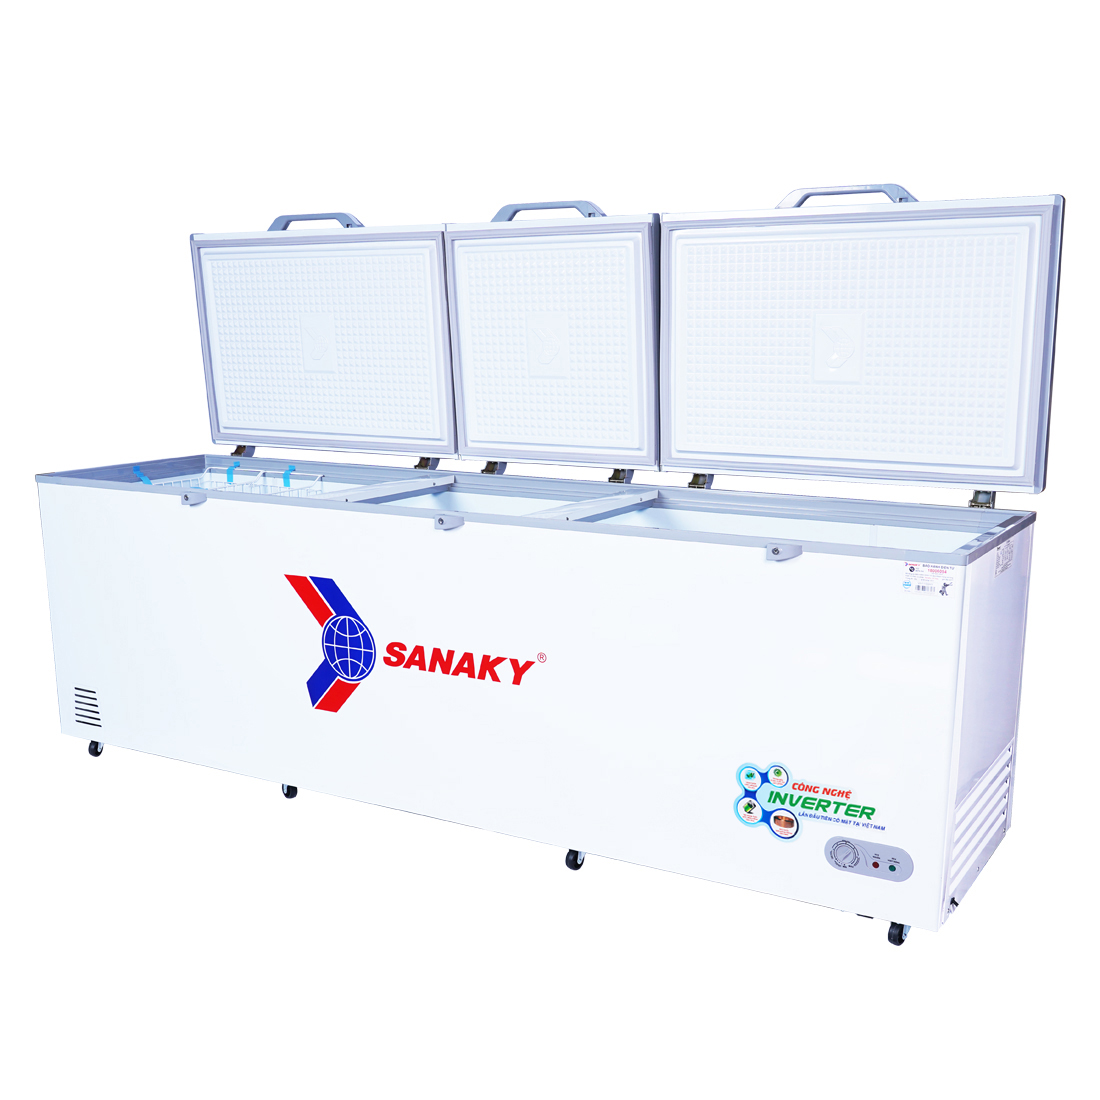 Tủ đông Sanaky Inverter 900 lít VH-1199HY3 - Bảo hành chính hãng  - Voucher 10% lên đến 800K